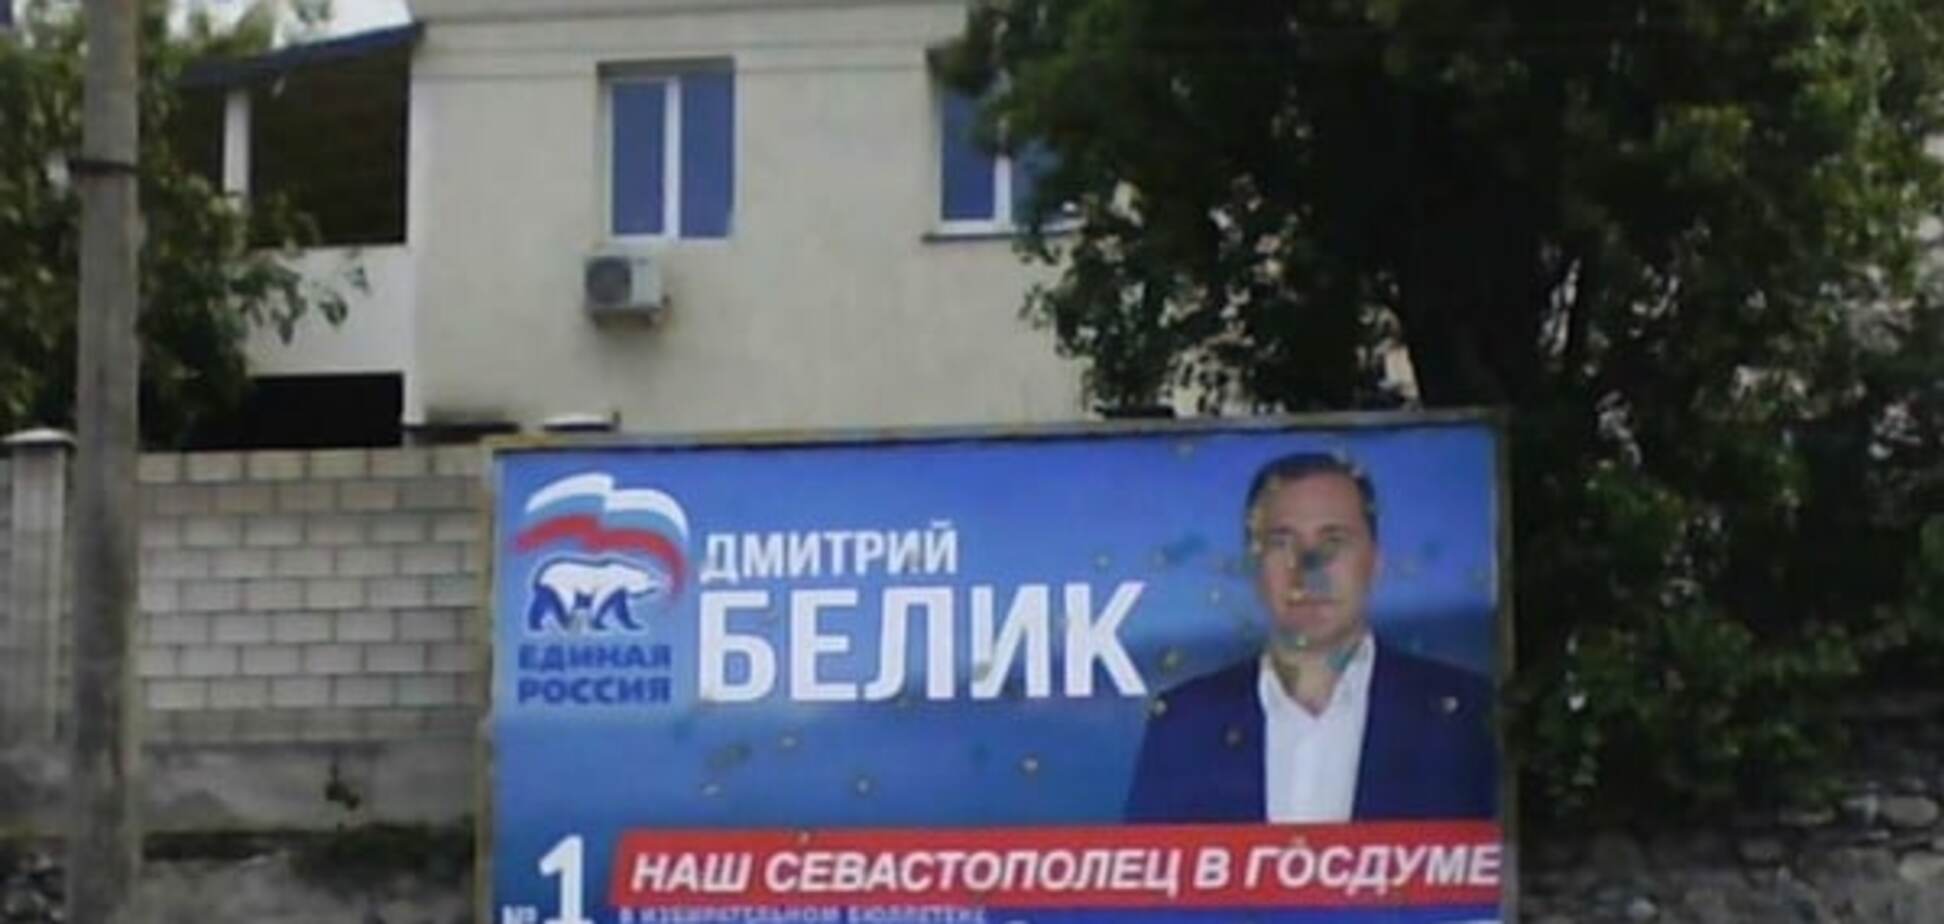 Немного патриотизма: в Севастополе 'подкорректировали' билборд экс-'регионала'. Фотофакт